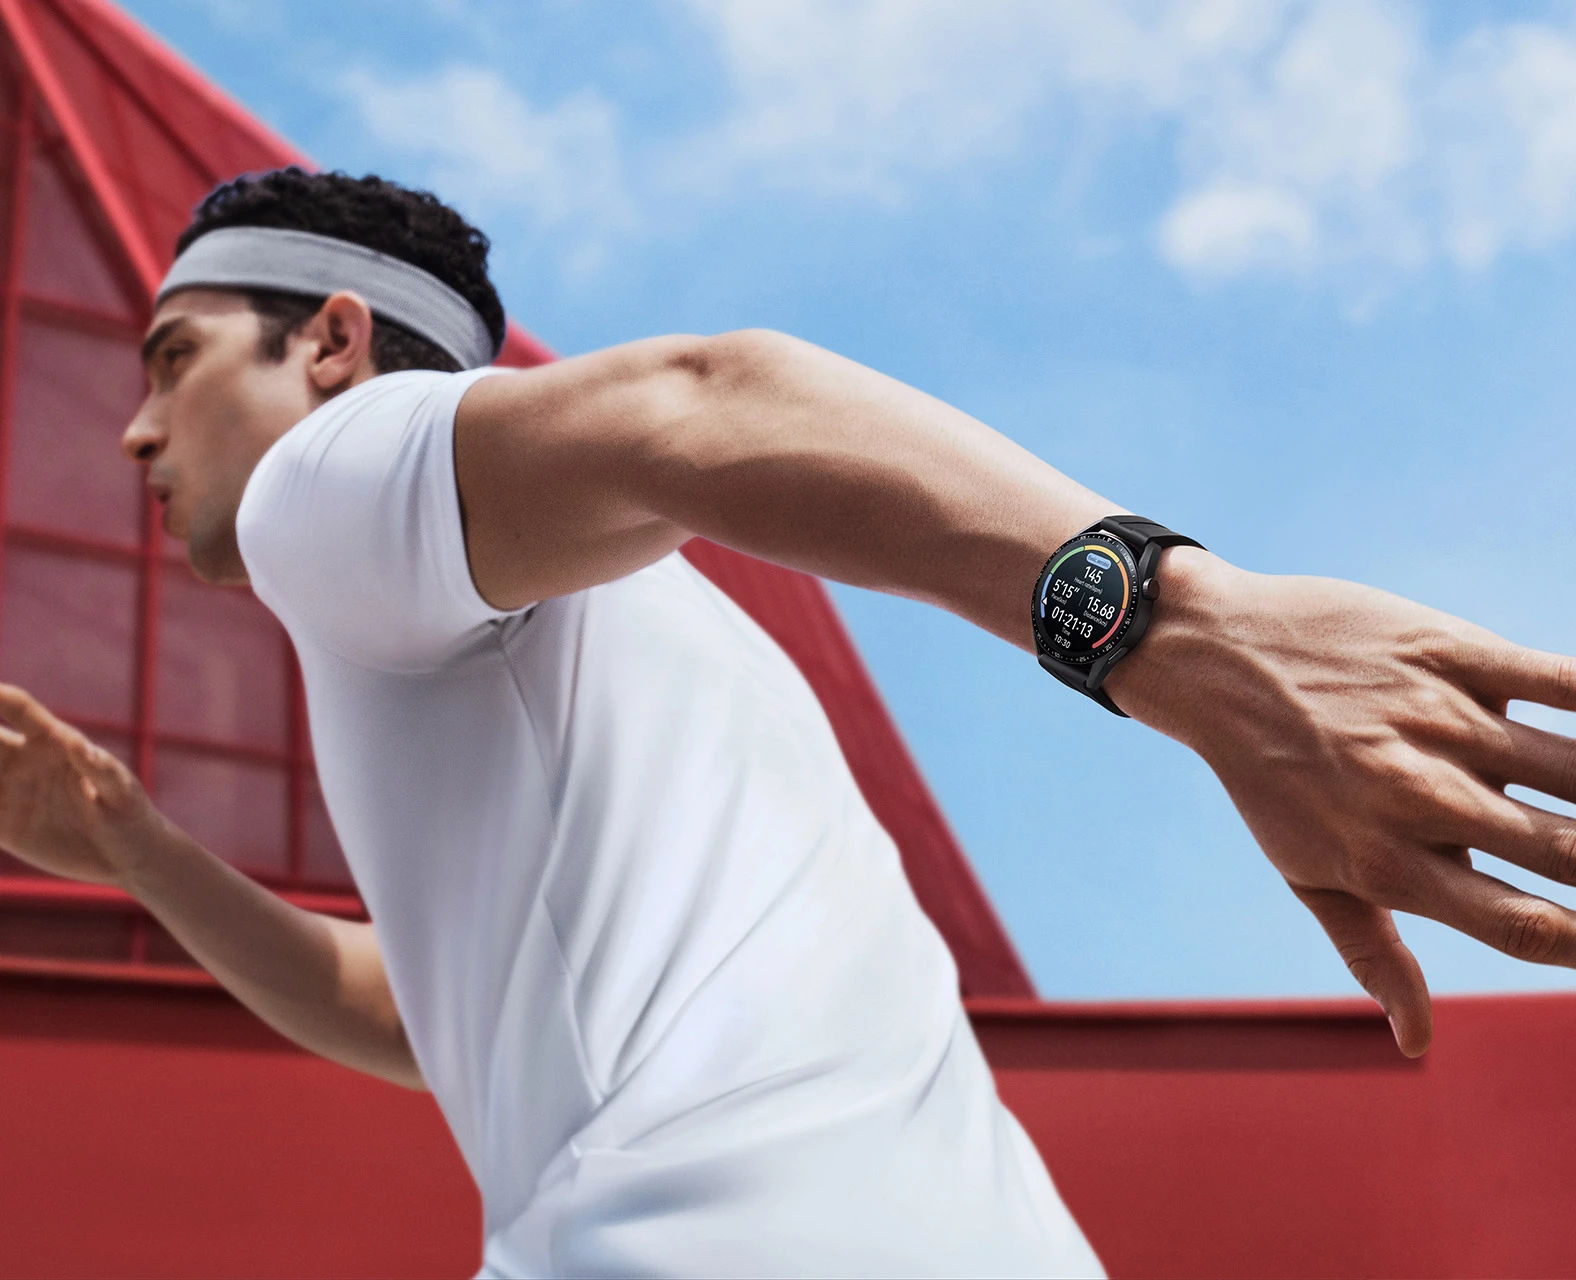 Entrena de forma más inteligente, no más fuerte. 3 smartwatches para  optimizar tu estilo de vida saludable.